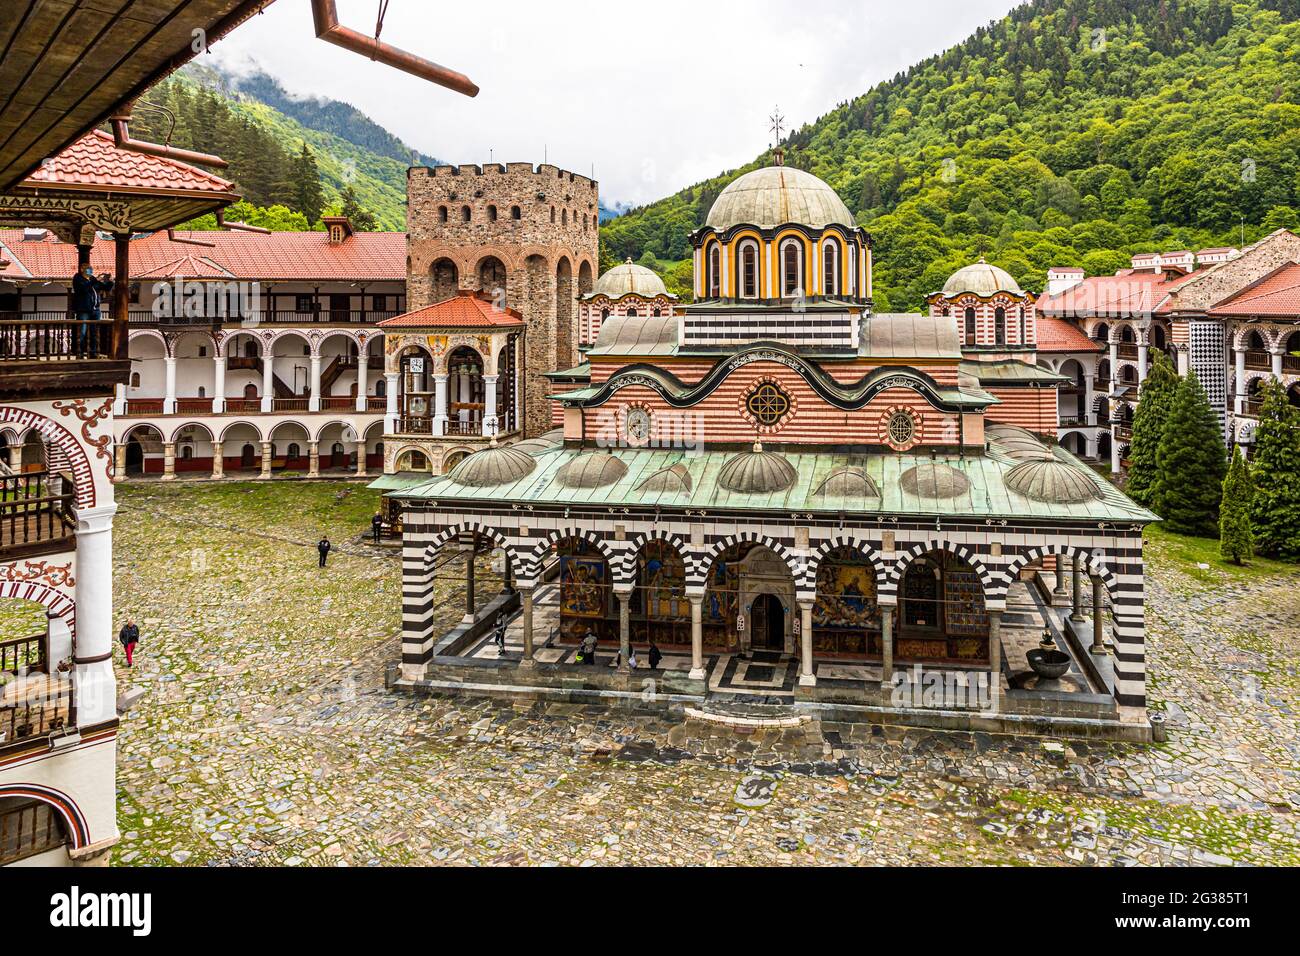 Le Monastère de Saint Ivan de Rila, mieux connu sous le nom de Monastère de Rila (Рилски манастир, Rilski manastir) est le plus grand et le plus célèbre monastère orthodoxe de l'est en Bulgarie. Il appartient au patrimoine mondial de l'UNESCO. Banque D'Images